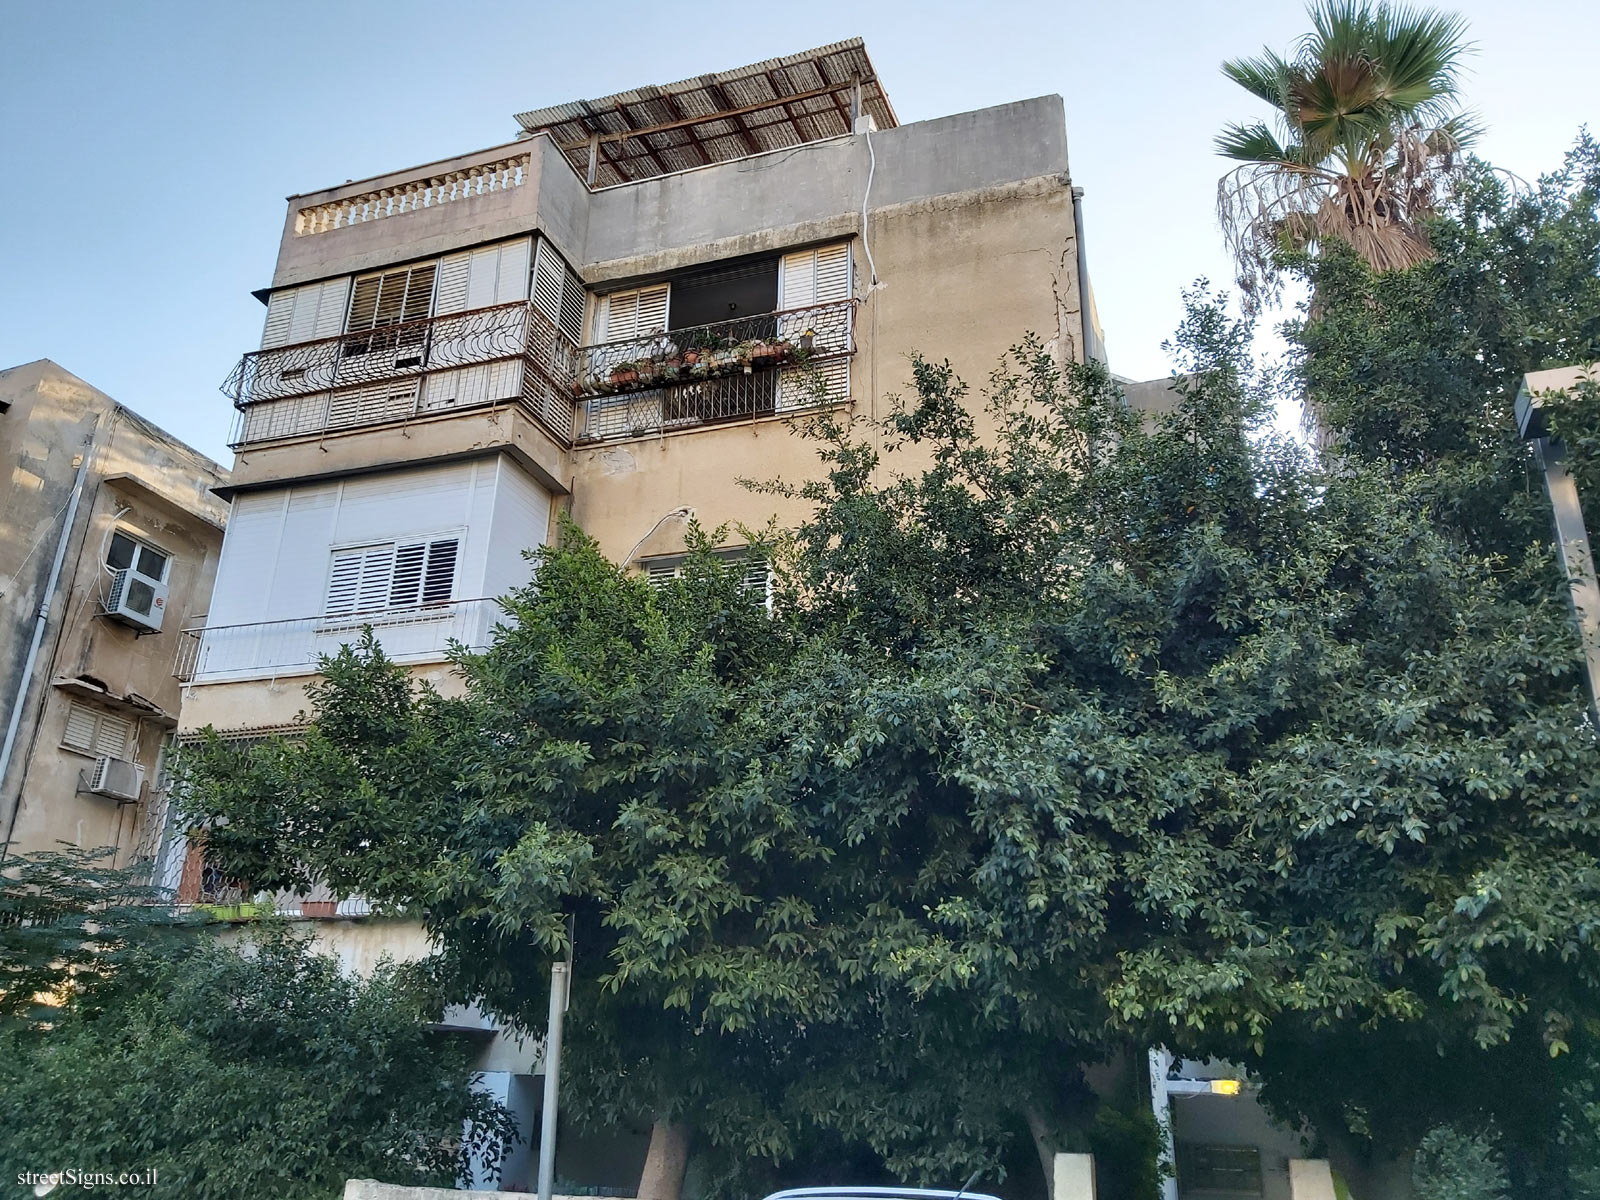 The house of Menachem Binyamini & Tamara Robbins - Dov Hoz St 24, Tel Aviv-Yafo, Israel